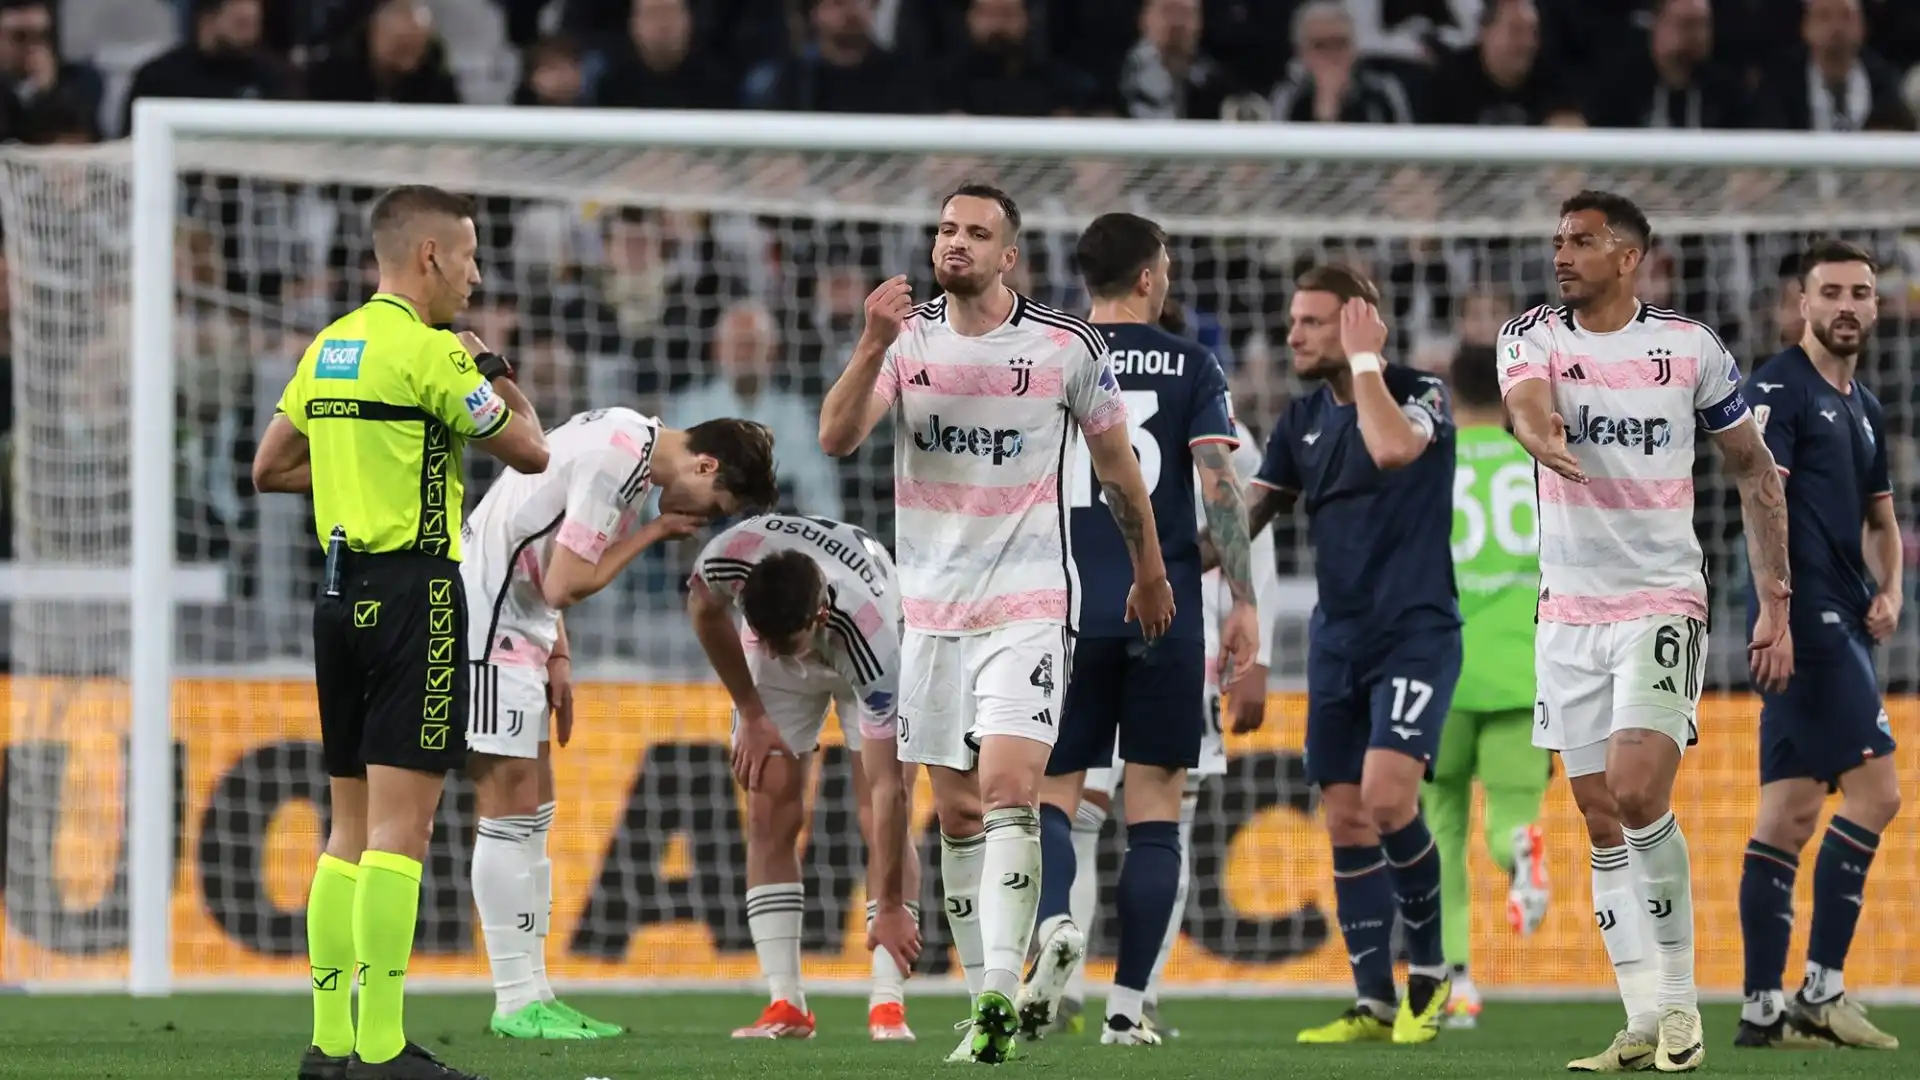 Il rigore concesso alla Juventus nella partita contro la Lazio e poi revocato dall'arbitro Massa su segnalazione del Var sta facendo discutere